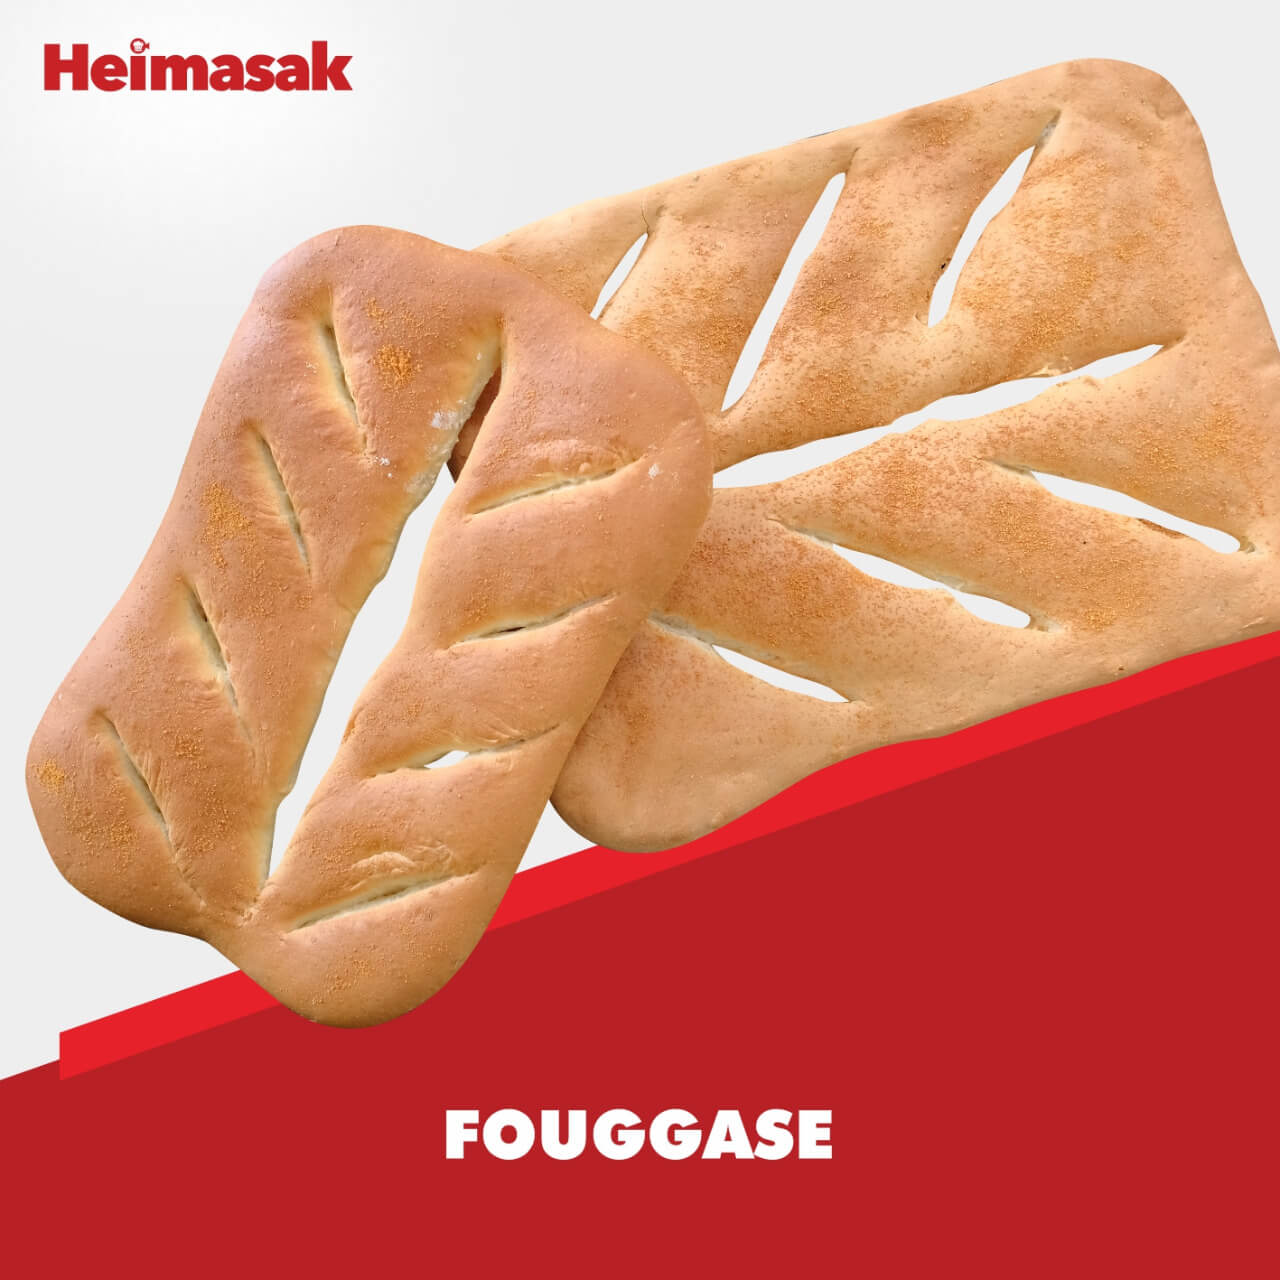 Heimasak – novi – Fouggase